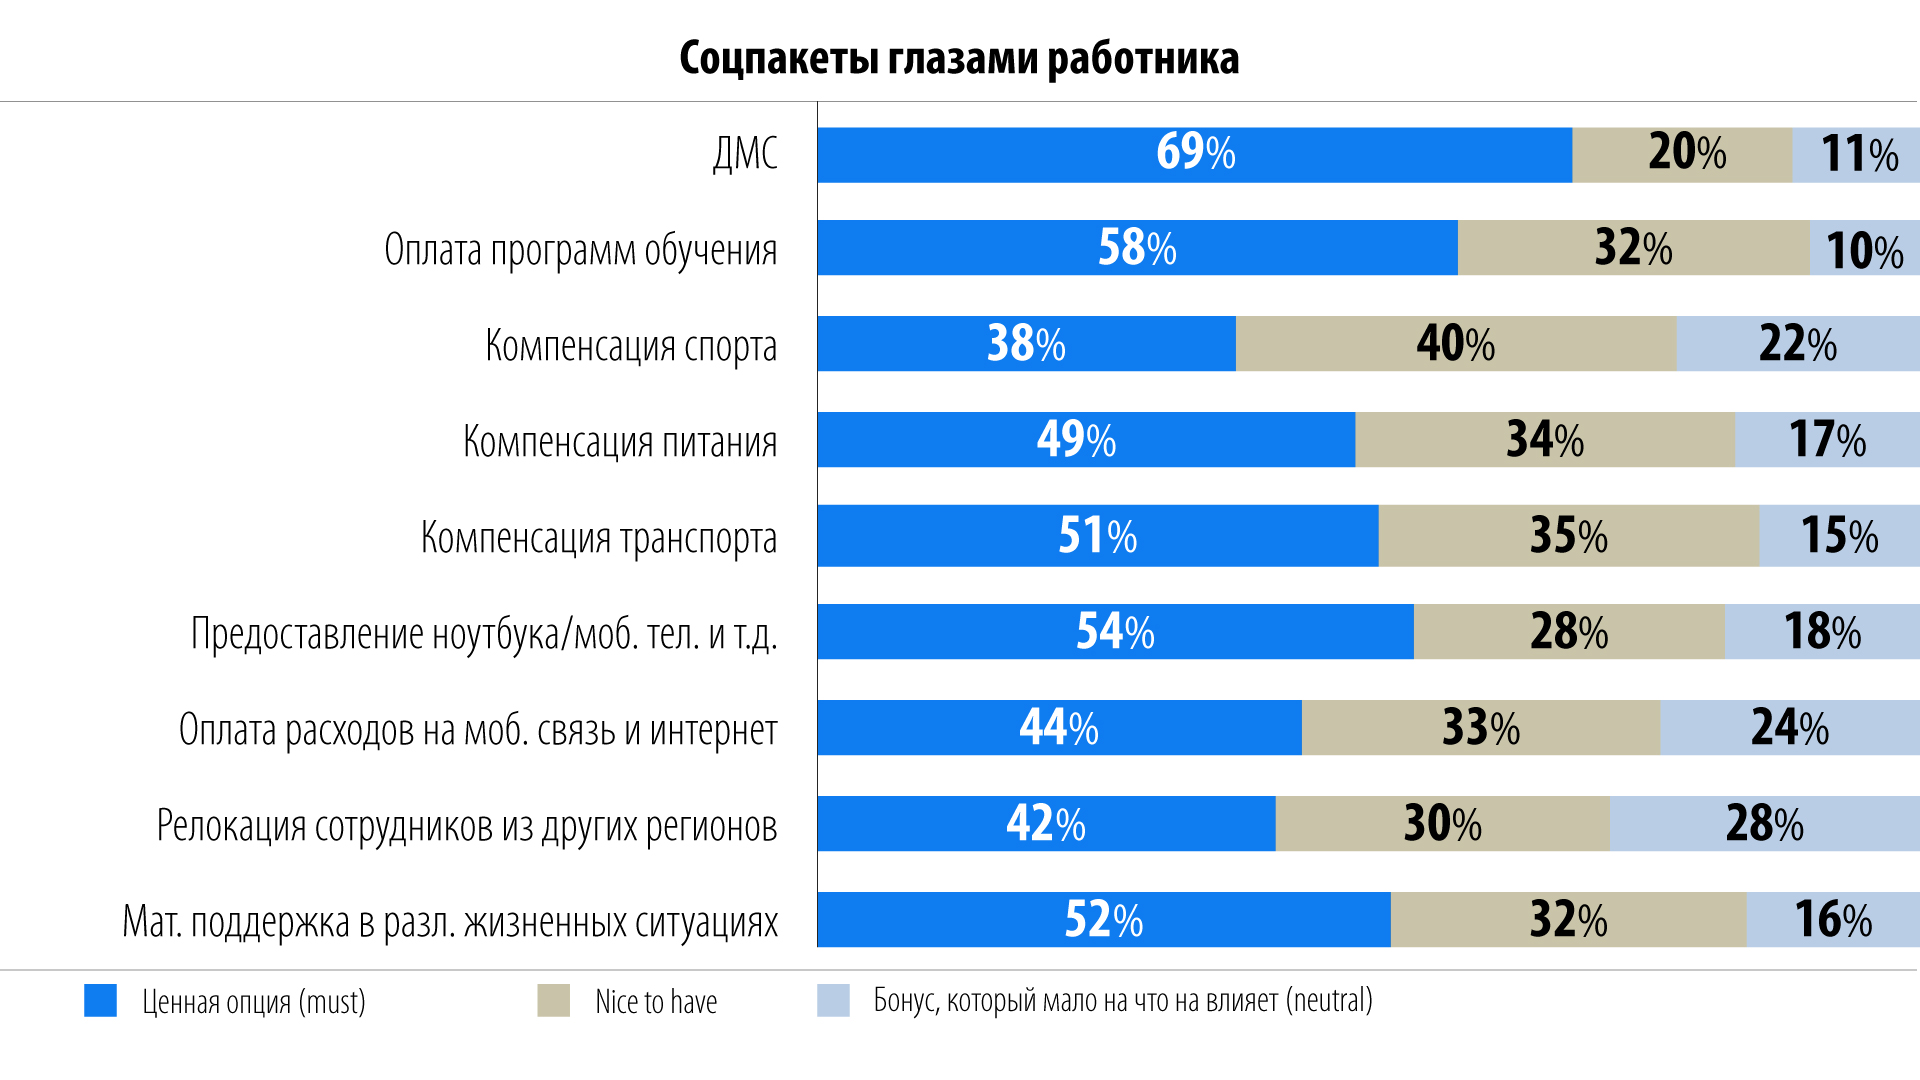 Данные: опрос соискателей hh.ru